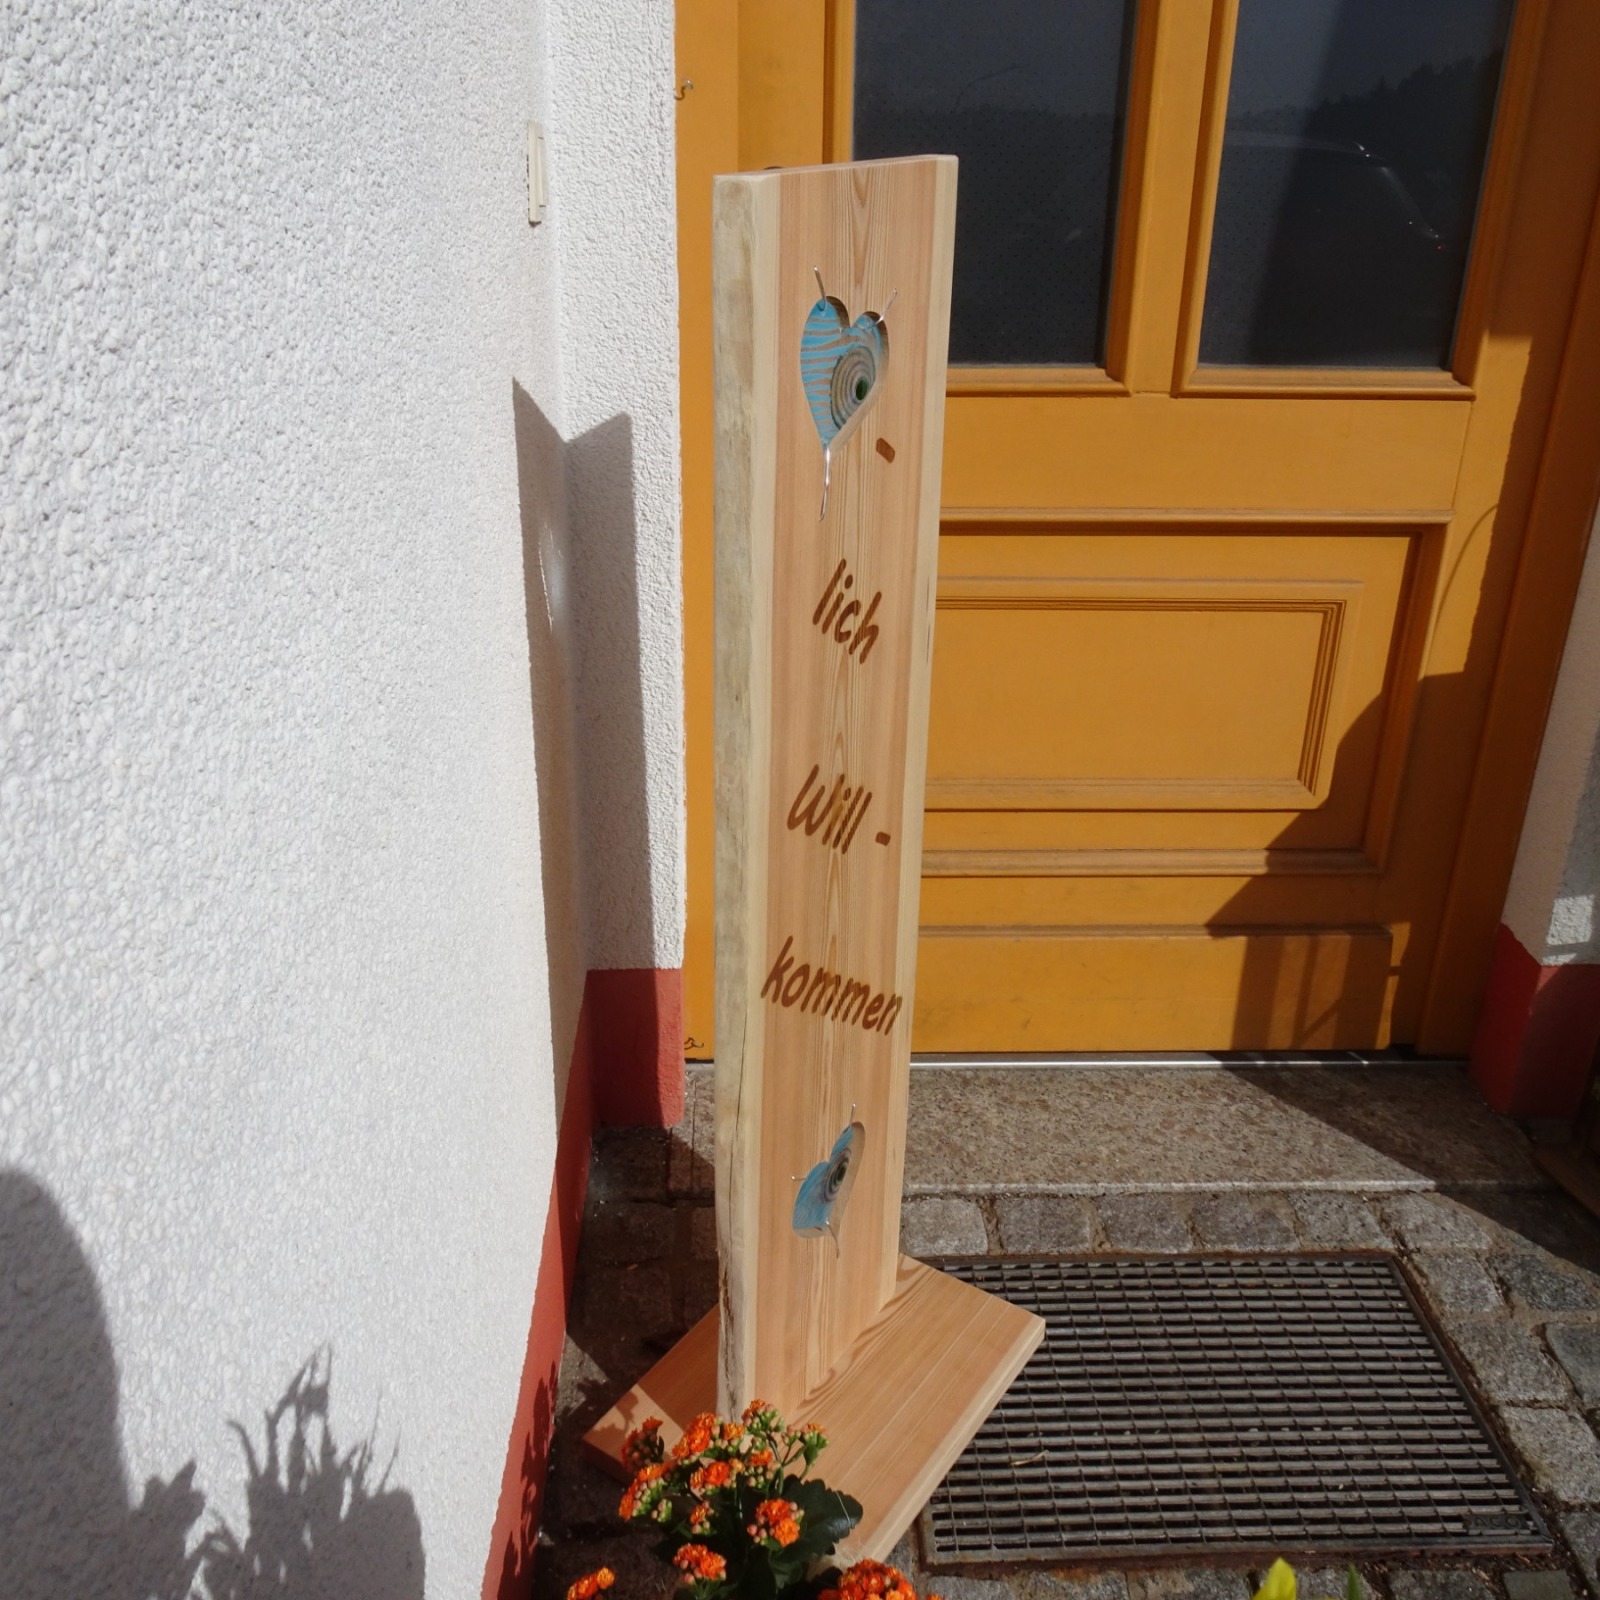 Willkommensschild, Gartenstele aus Lärchenholz mit blauen Glas Herzen und eingebrannten Schriftzug,